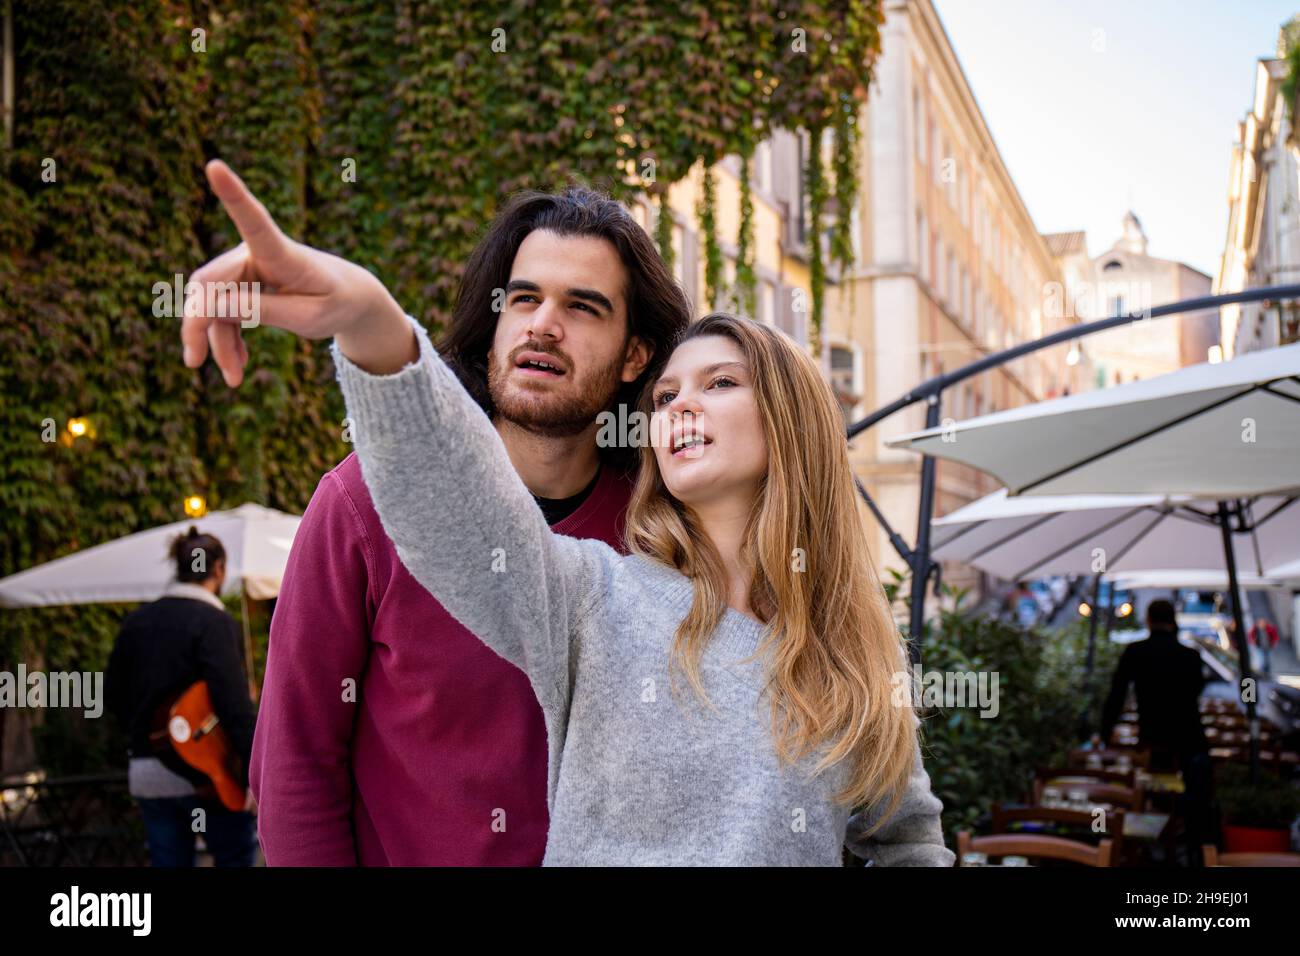 Schönes Paar, das nach Rom reist. Eine blonde Frau weist ihrem Freund den Weg. Junge Menschen schauen in die gleiche Richtung. Stockfoto